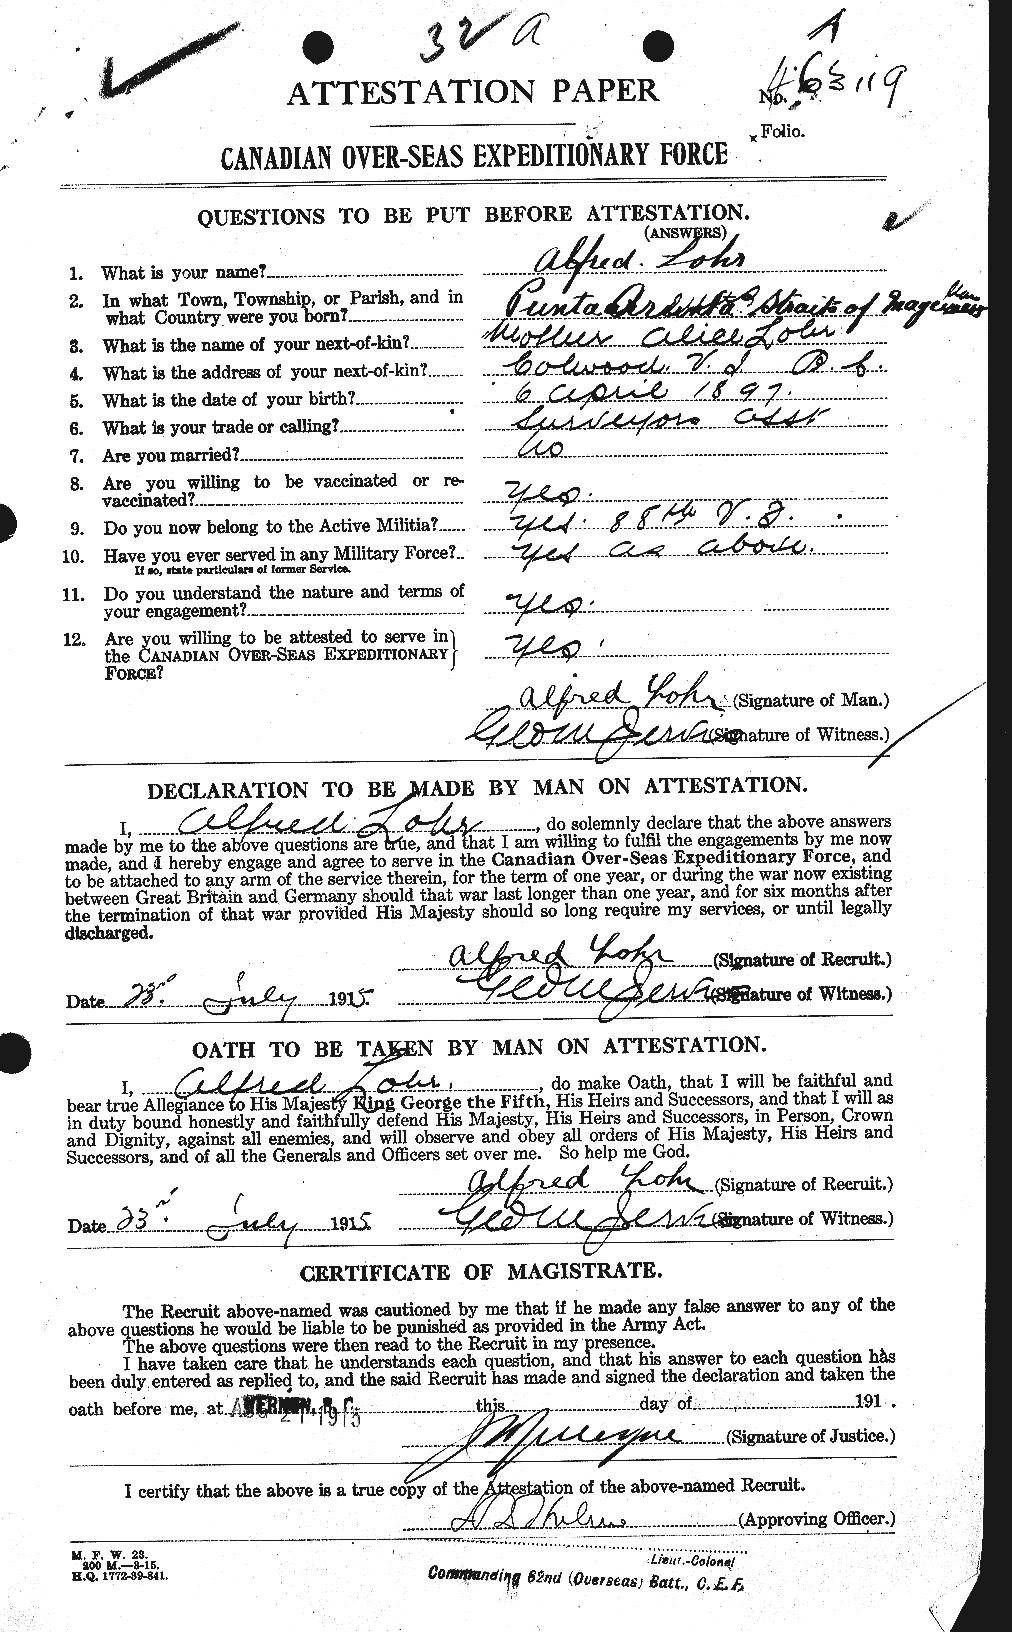 Dossiers du Personnel de la Première Guerre mondiale - CEC 461955a